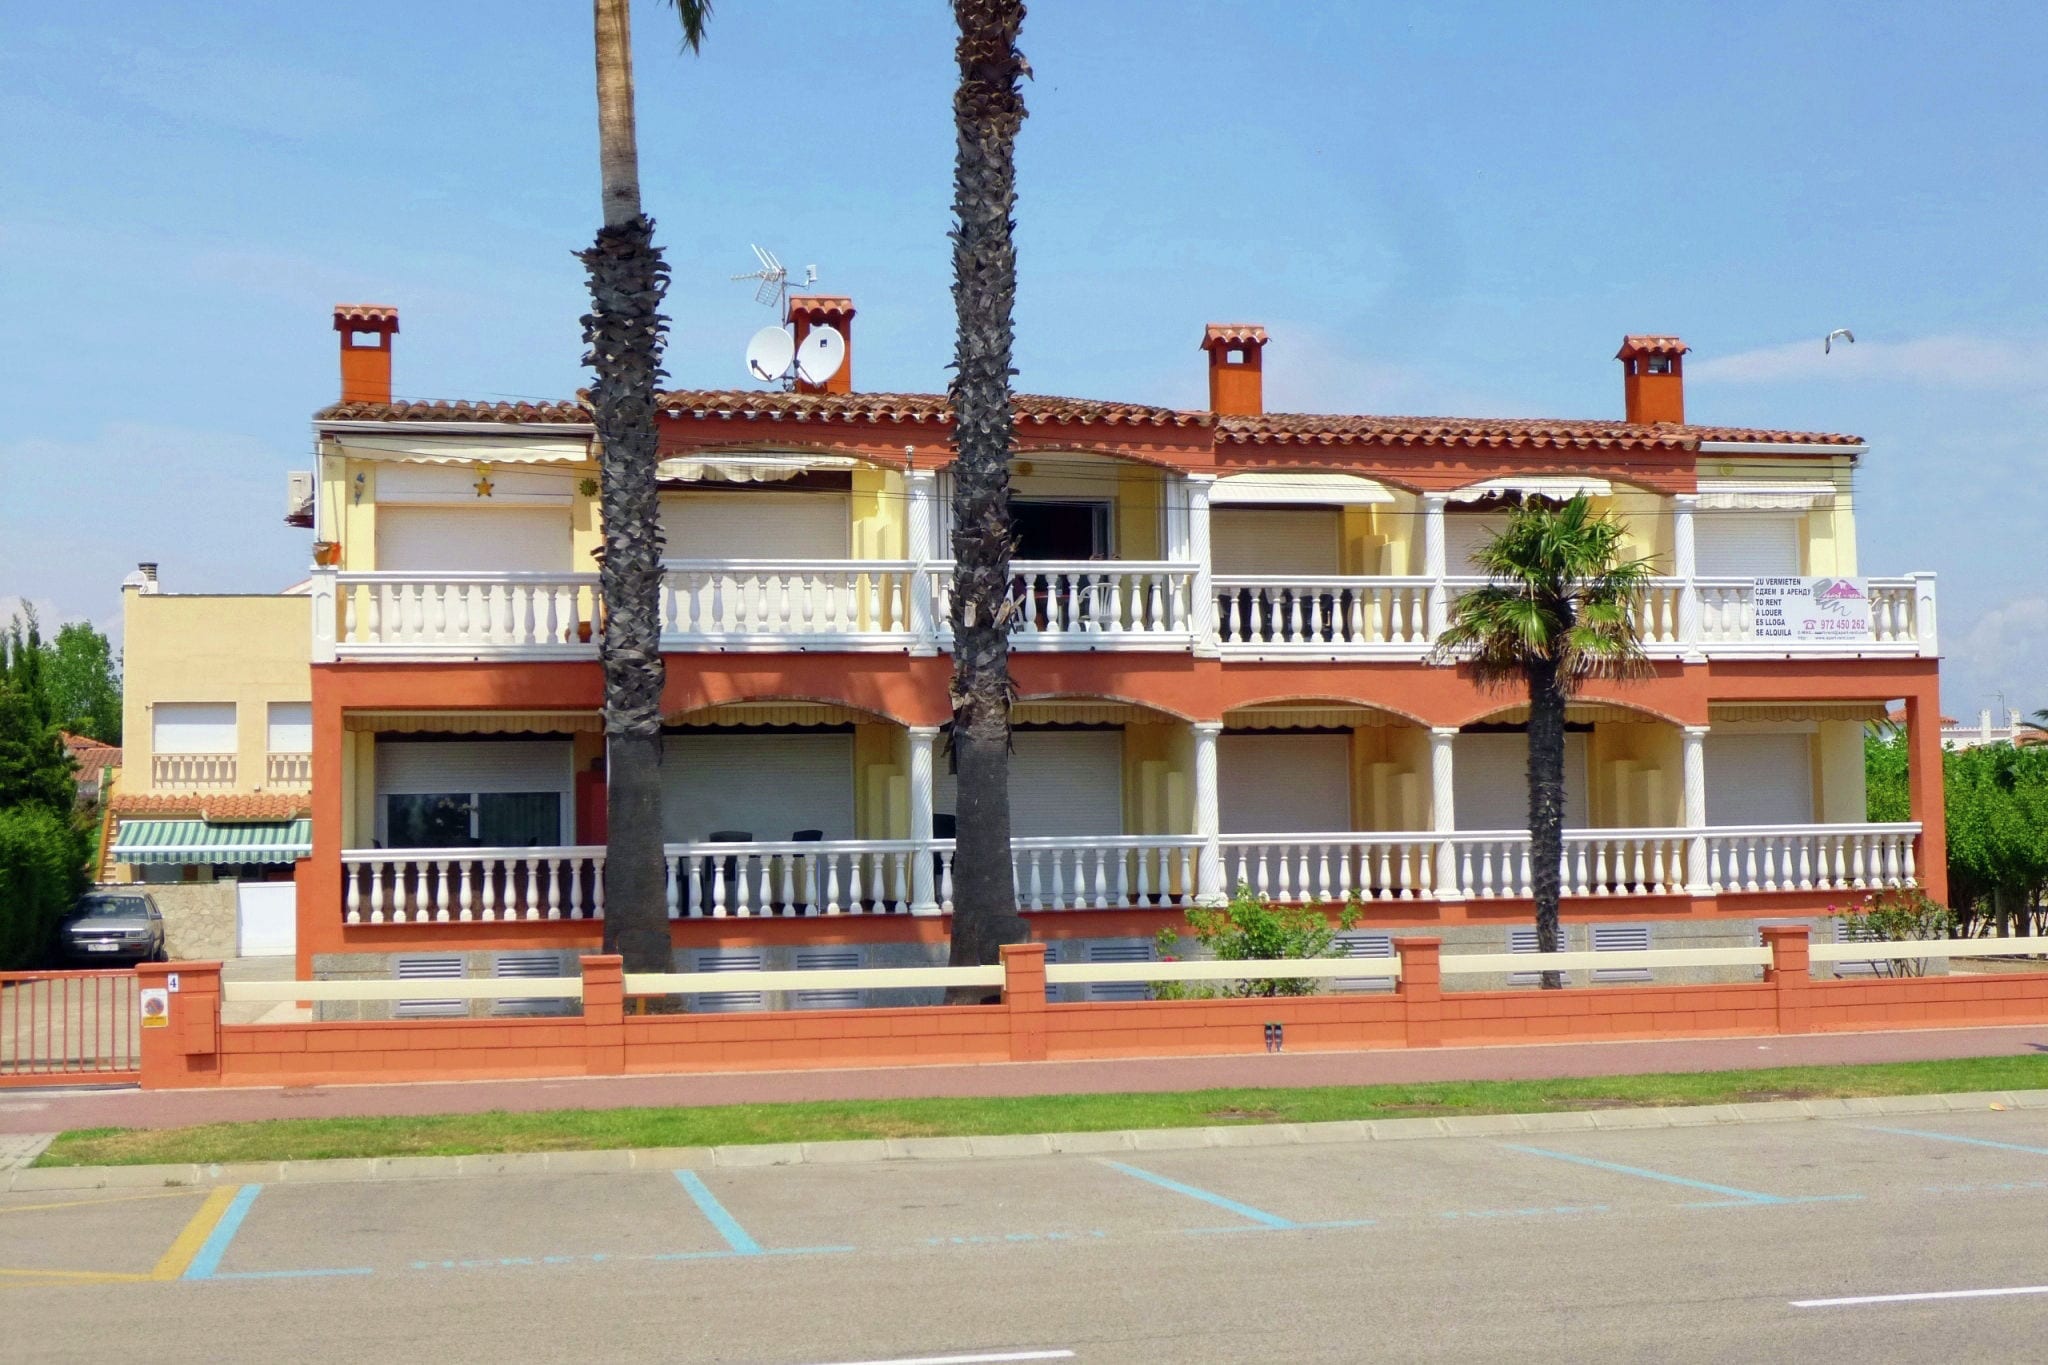 Moderne Ferienwohnung mit Terrasse in Empuriabrava Spanien